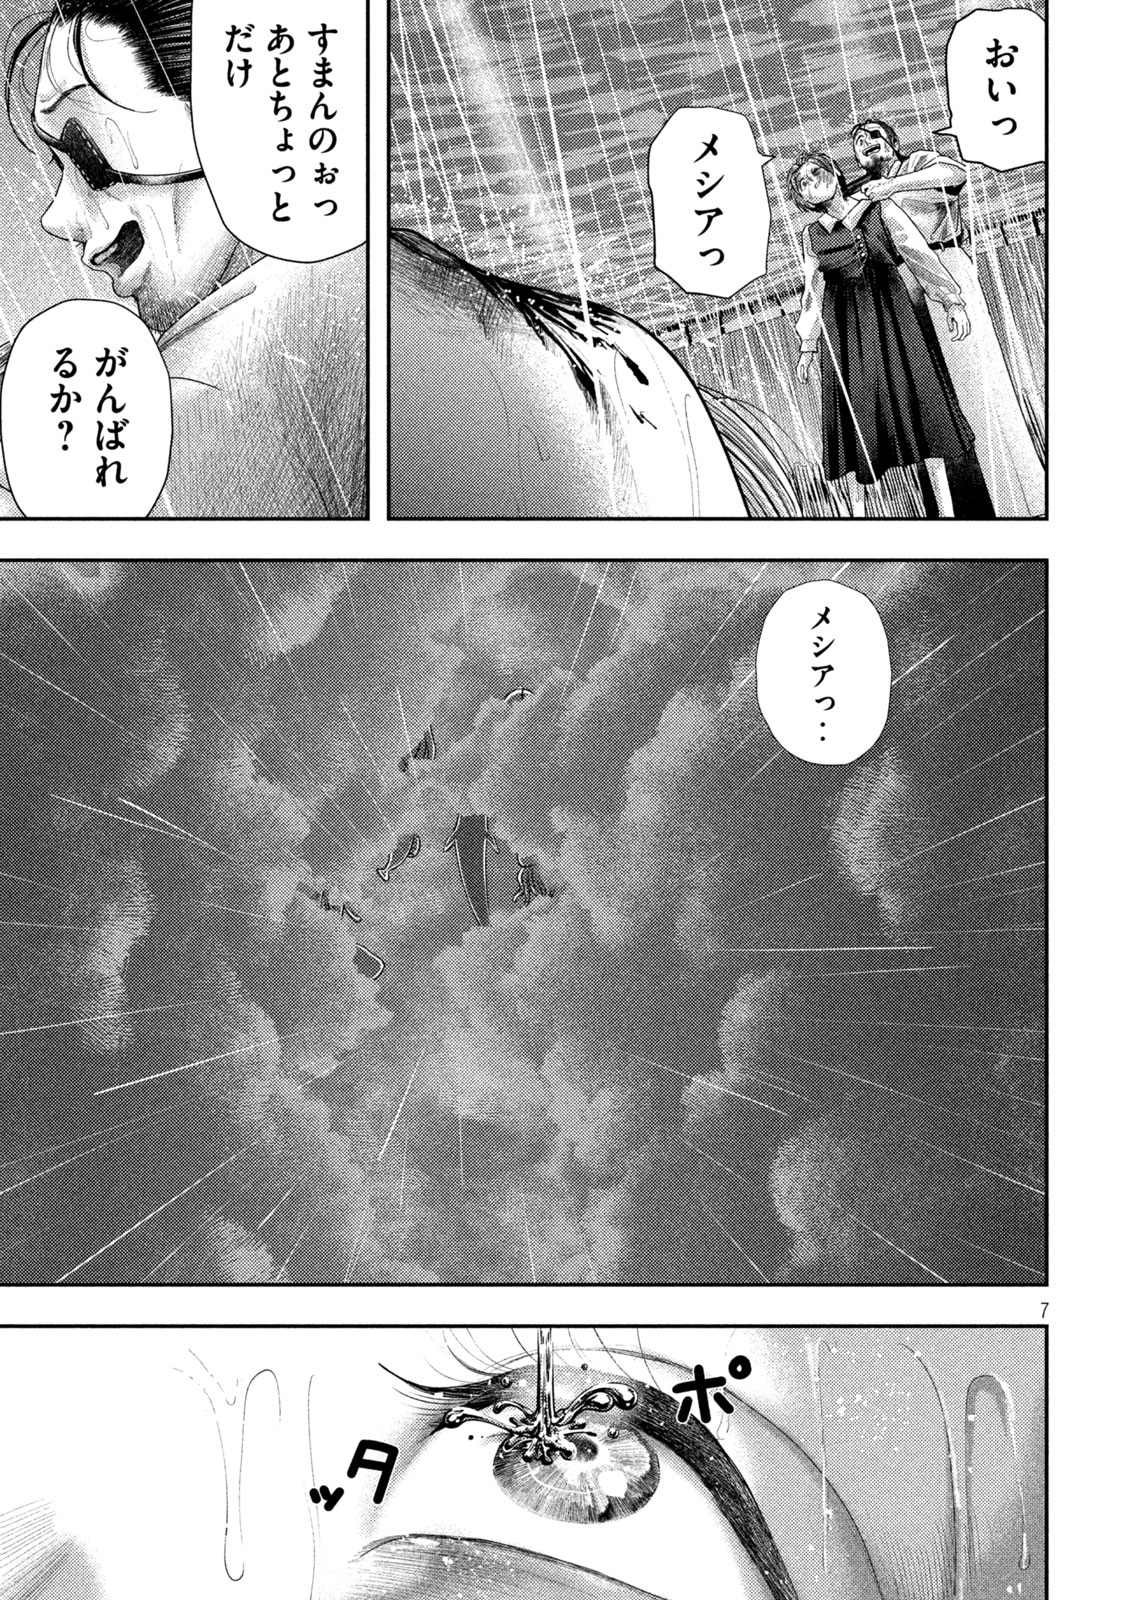 Nezumi no Koi - Chapter 25 - Page 7